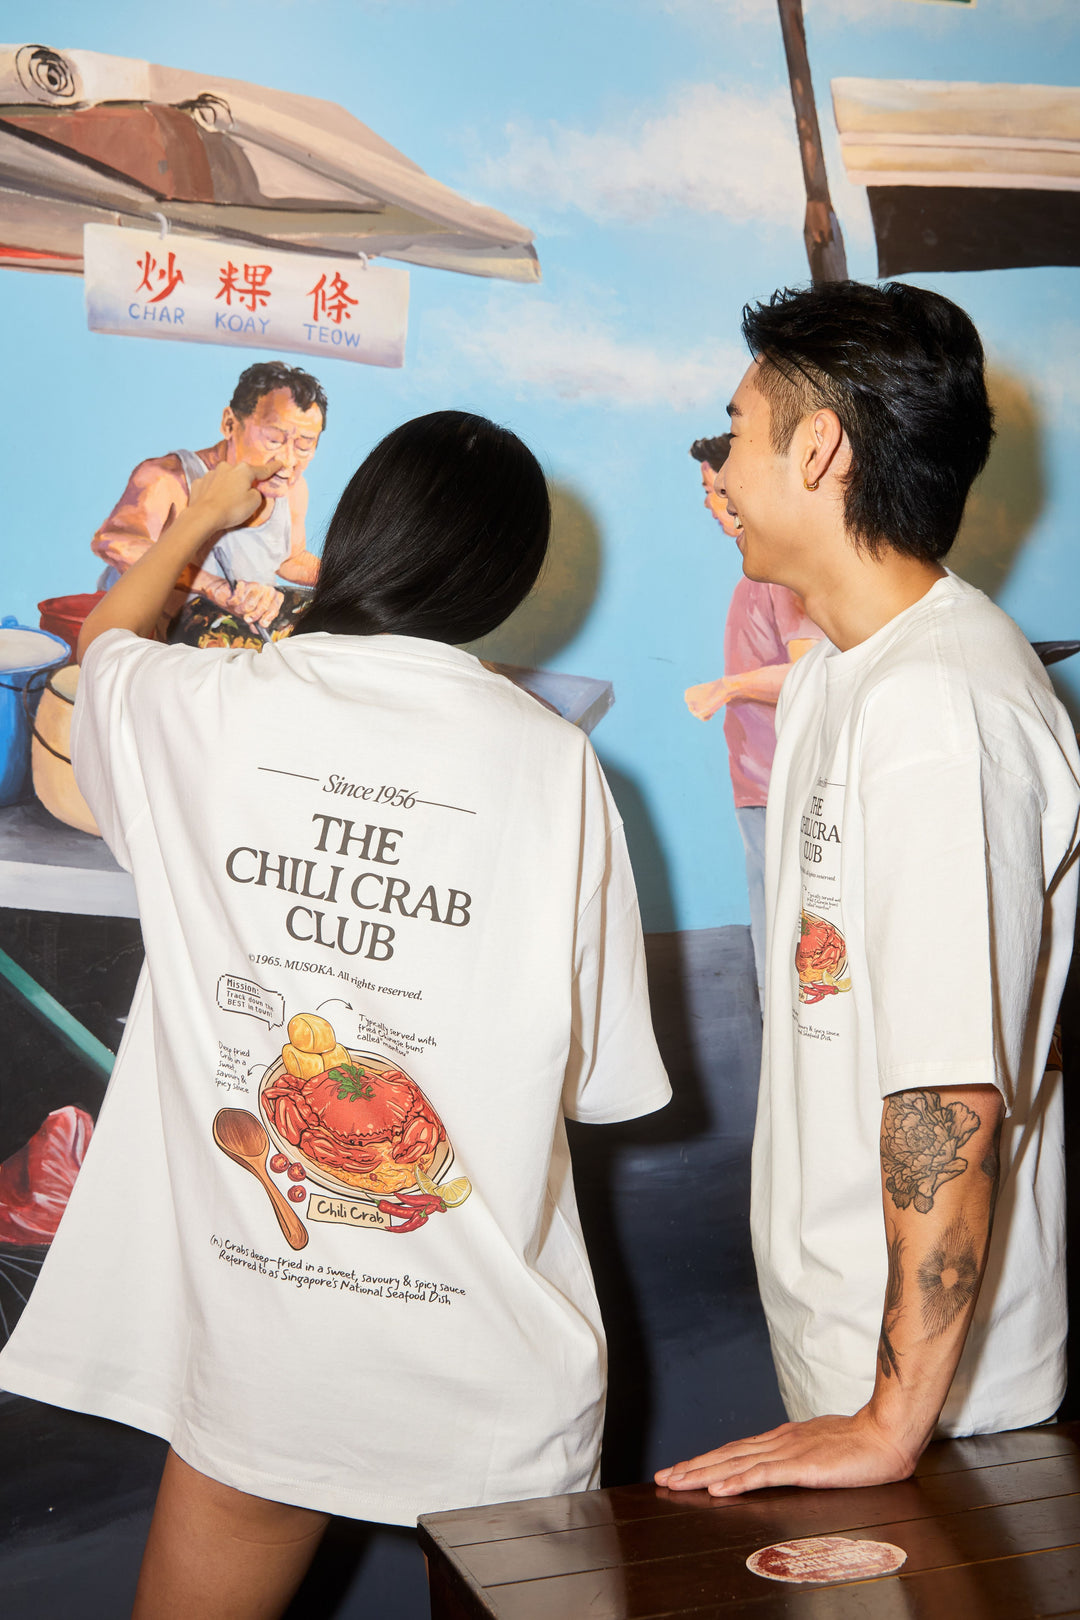 The Chili Crab Club